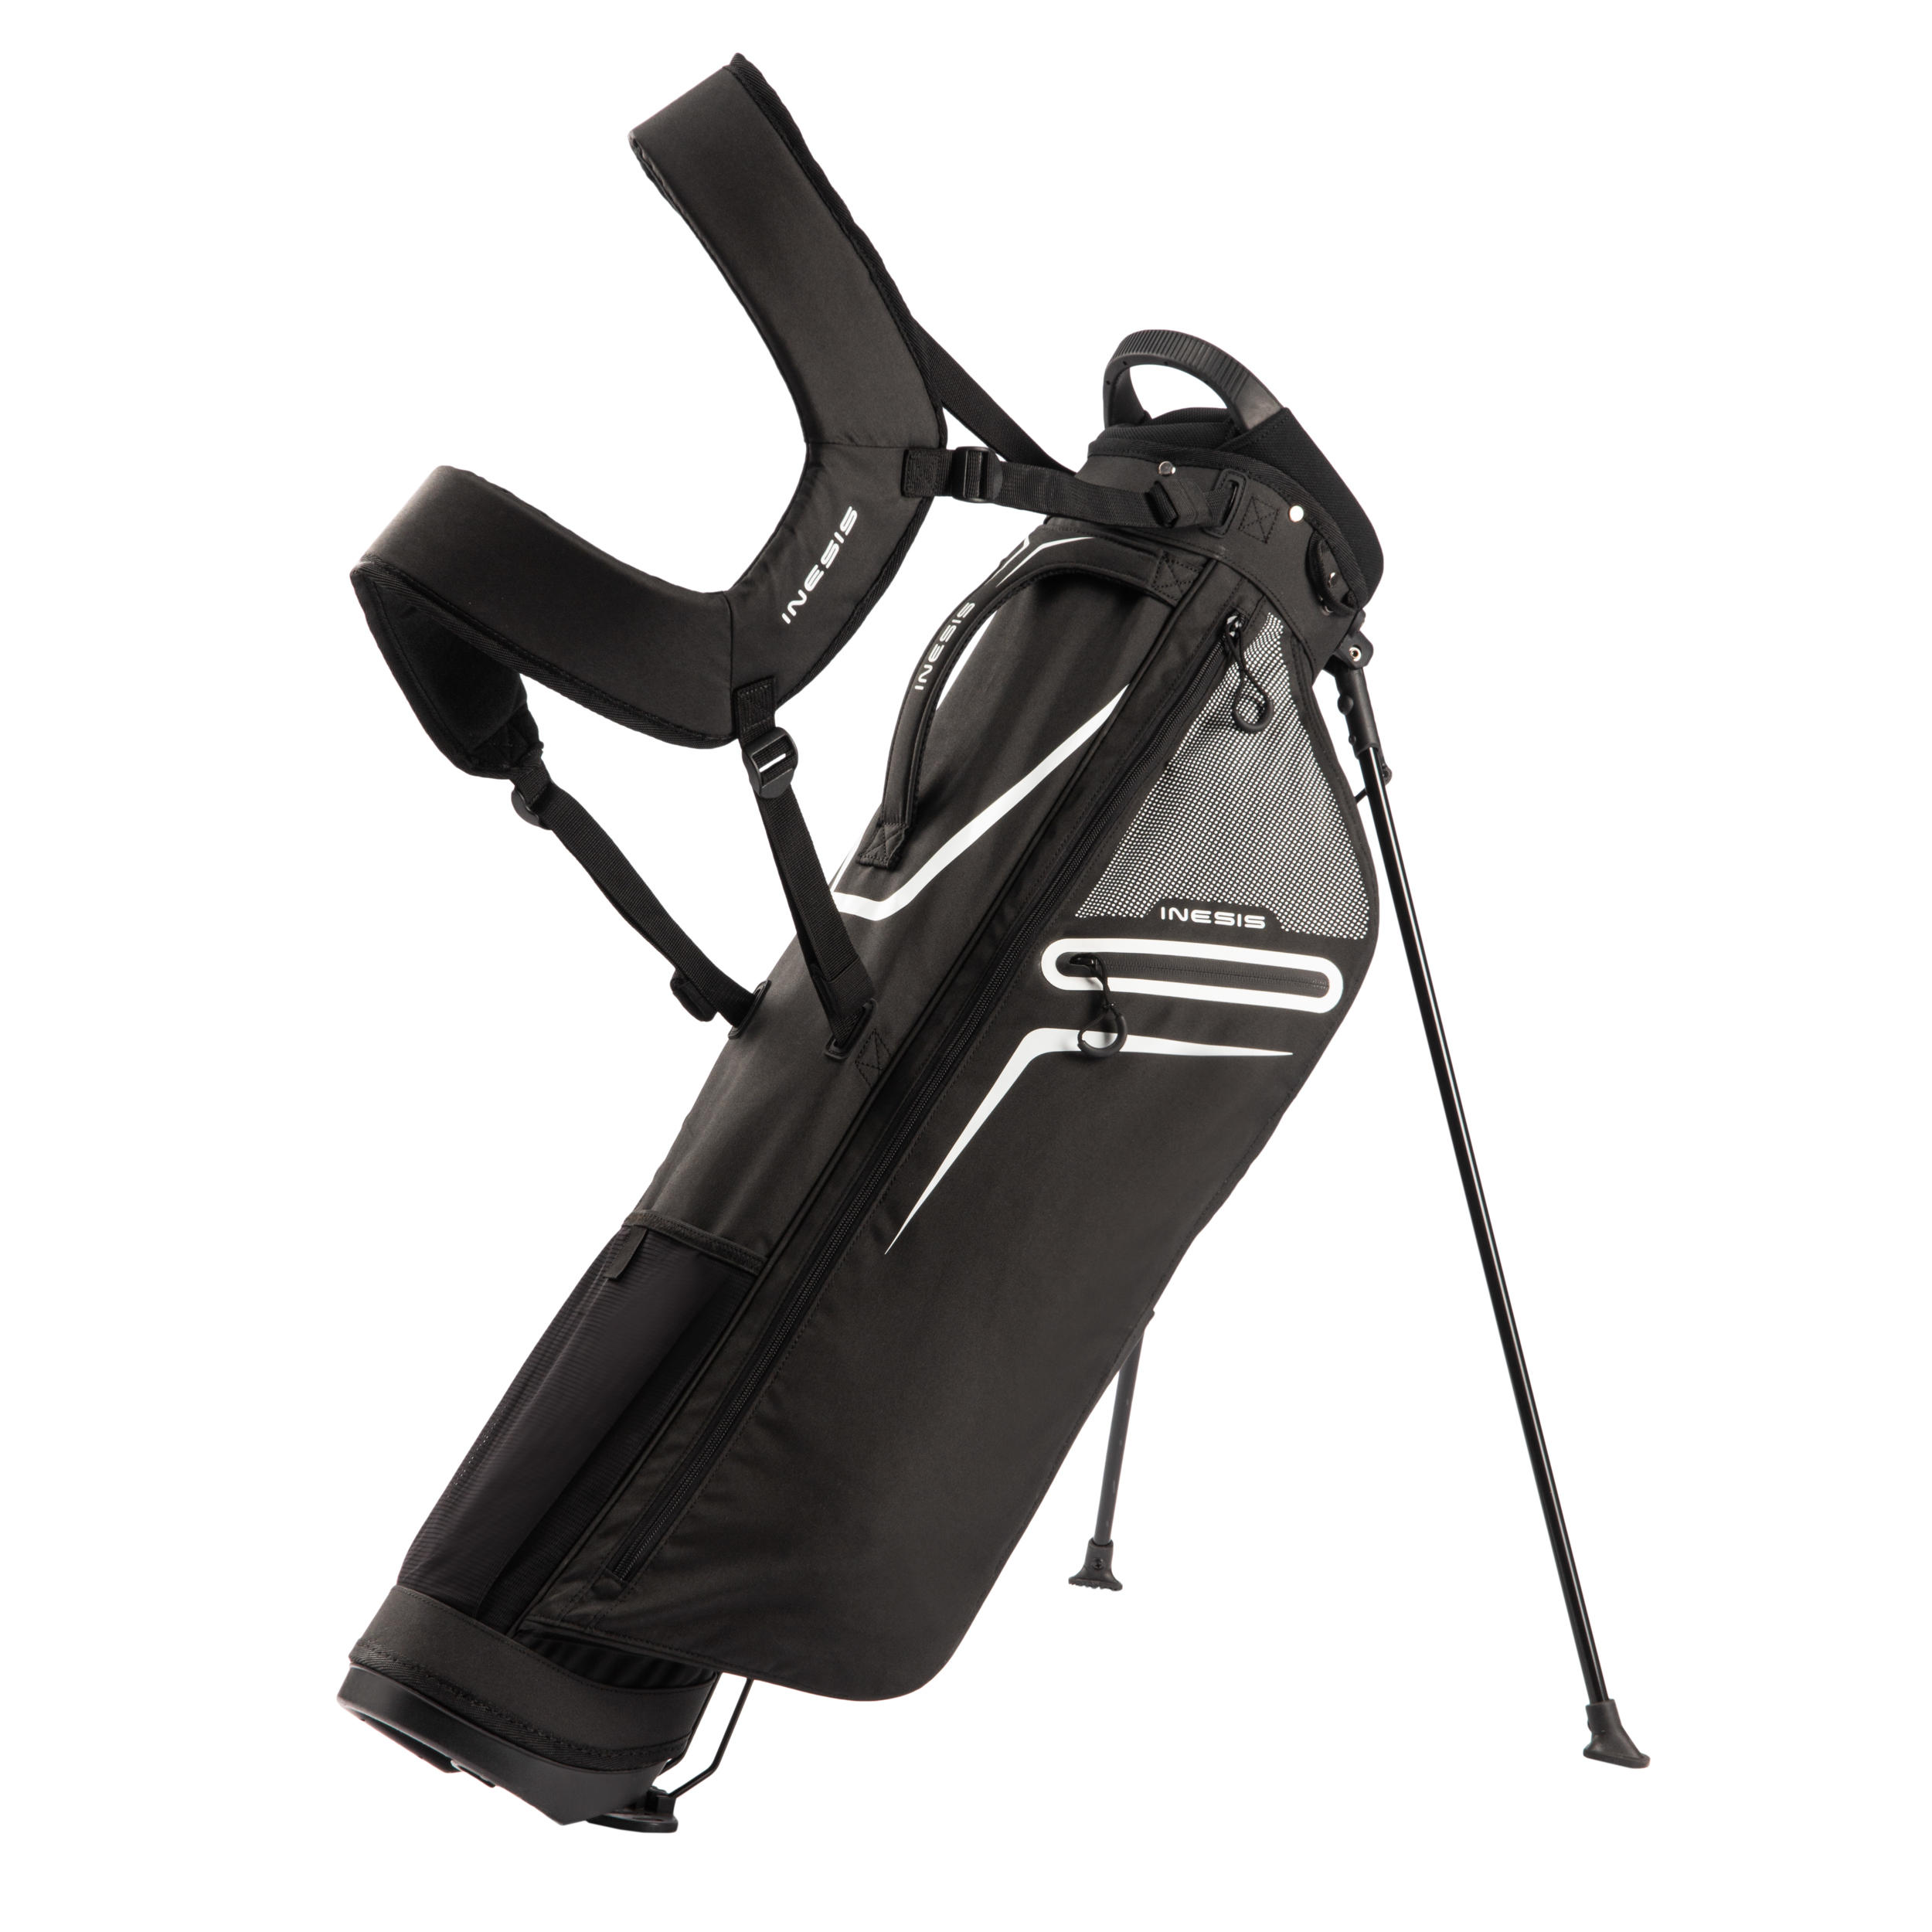 [ส่งฟรี ] ถุงกอล์ฟขาตั้งน้ำหนักเบาเป็นพิเศษ (สีดำ) Golf Ultralight Stand Bag - Black ถุงกอล์ฟกันน้ำ ถุงกอล์ฟพกพา ถุงกอล์ฟขาตั้ง กระเป๋ากอล์ฟ กระเป๋าใส่ไม้กอล์ฟ Golf Bag Golf Bag Stand Golf bag cart